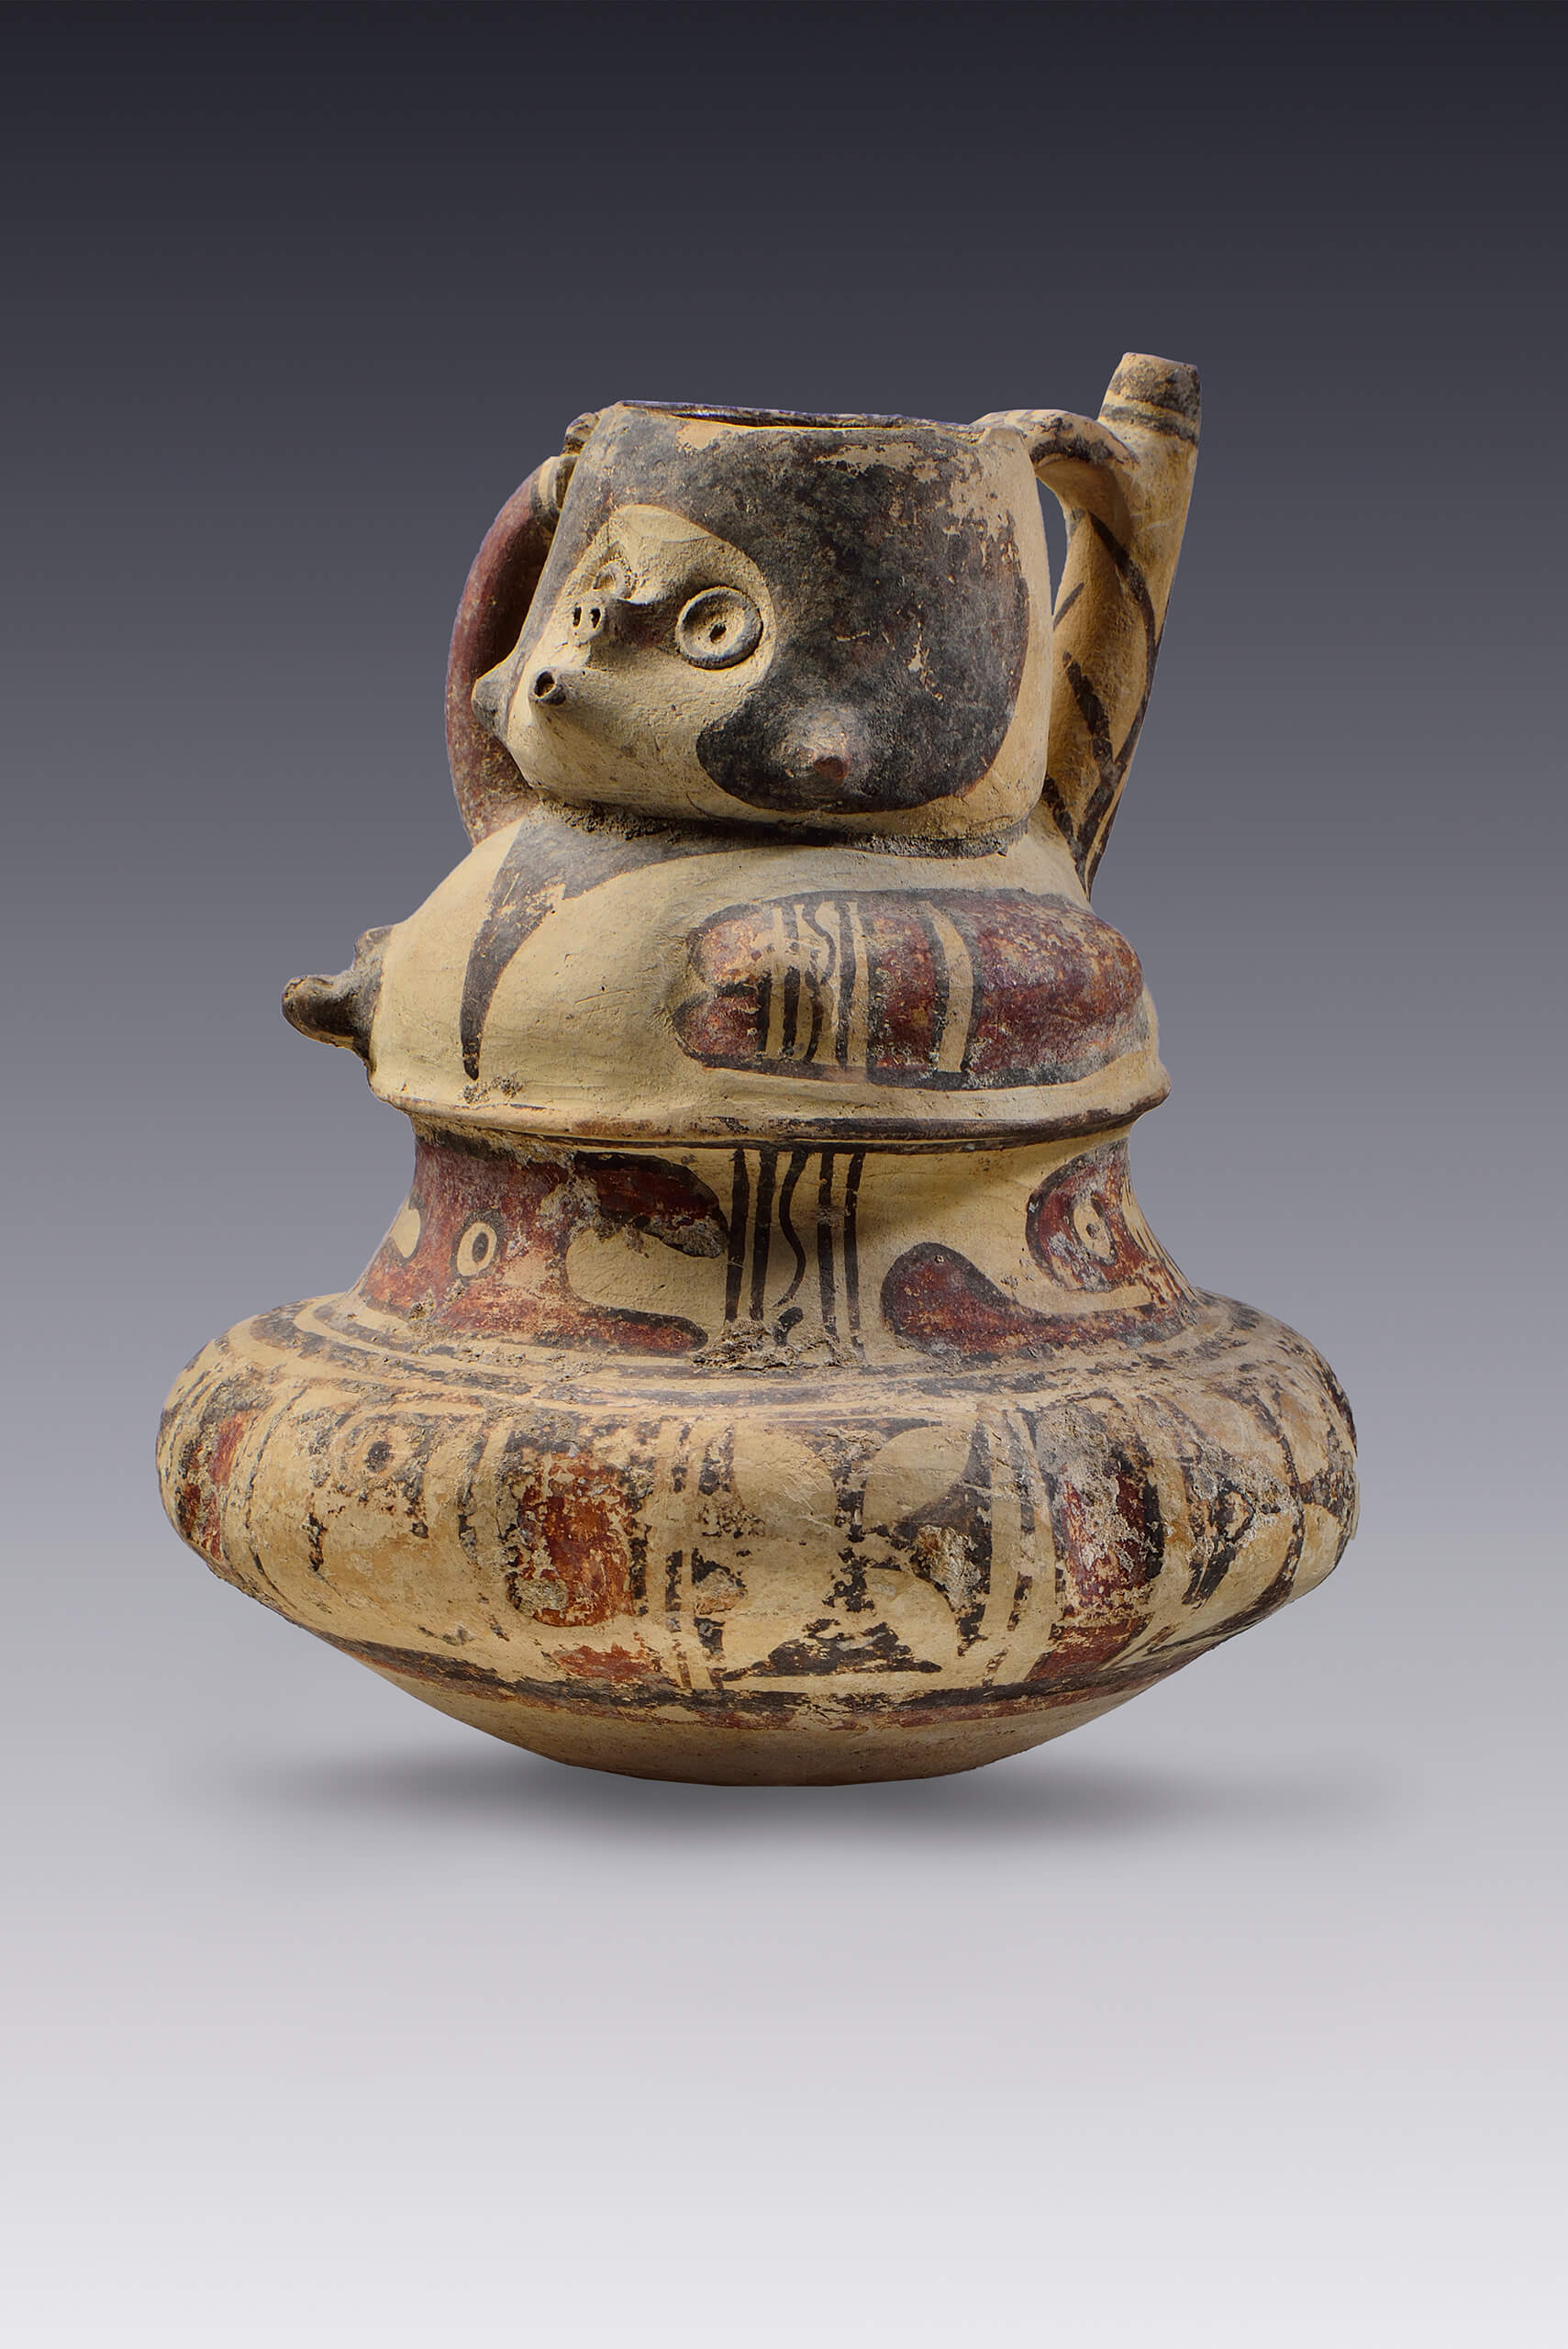 Vasija con vertedera y efigie antropomorfa | El México antiguo. Salas de Arte Prehispánico | Museo Amparo, Puebla